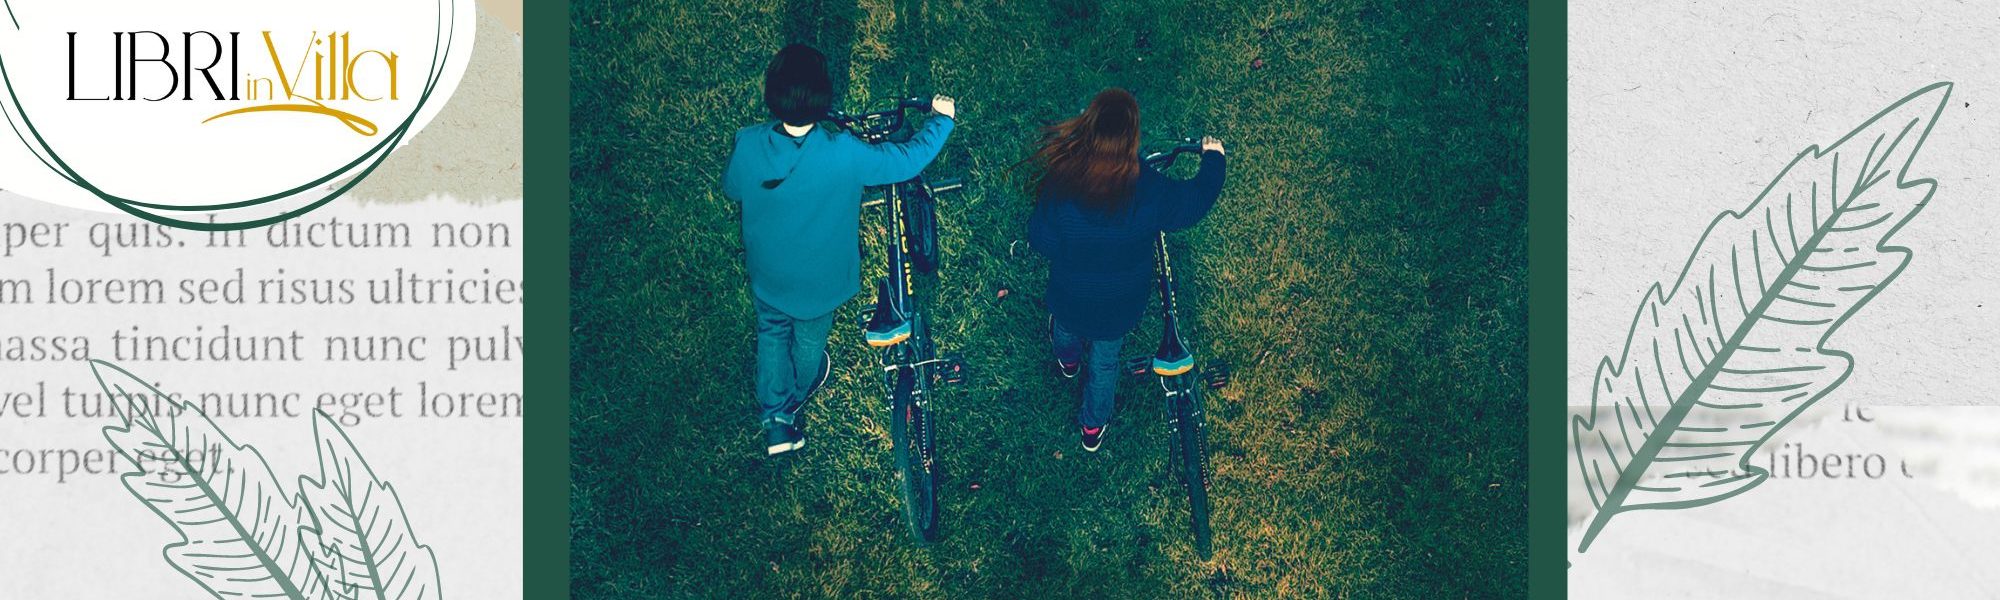 mmagine della copertina del libro con due giovani che passeggiano tenendo le loro biciclette